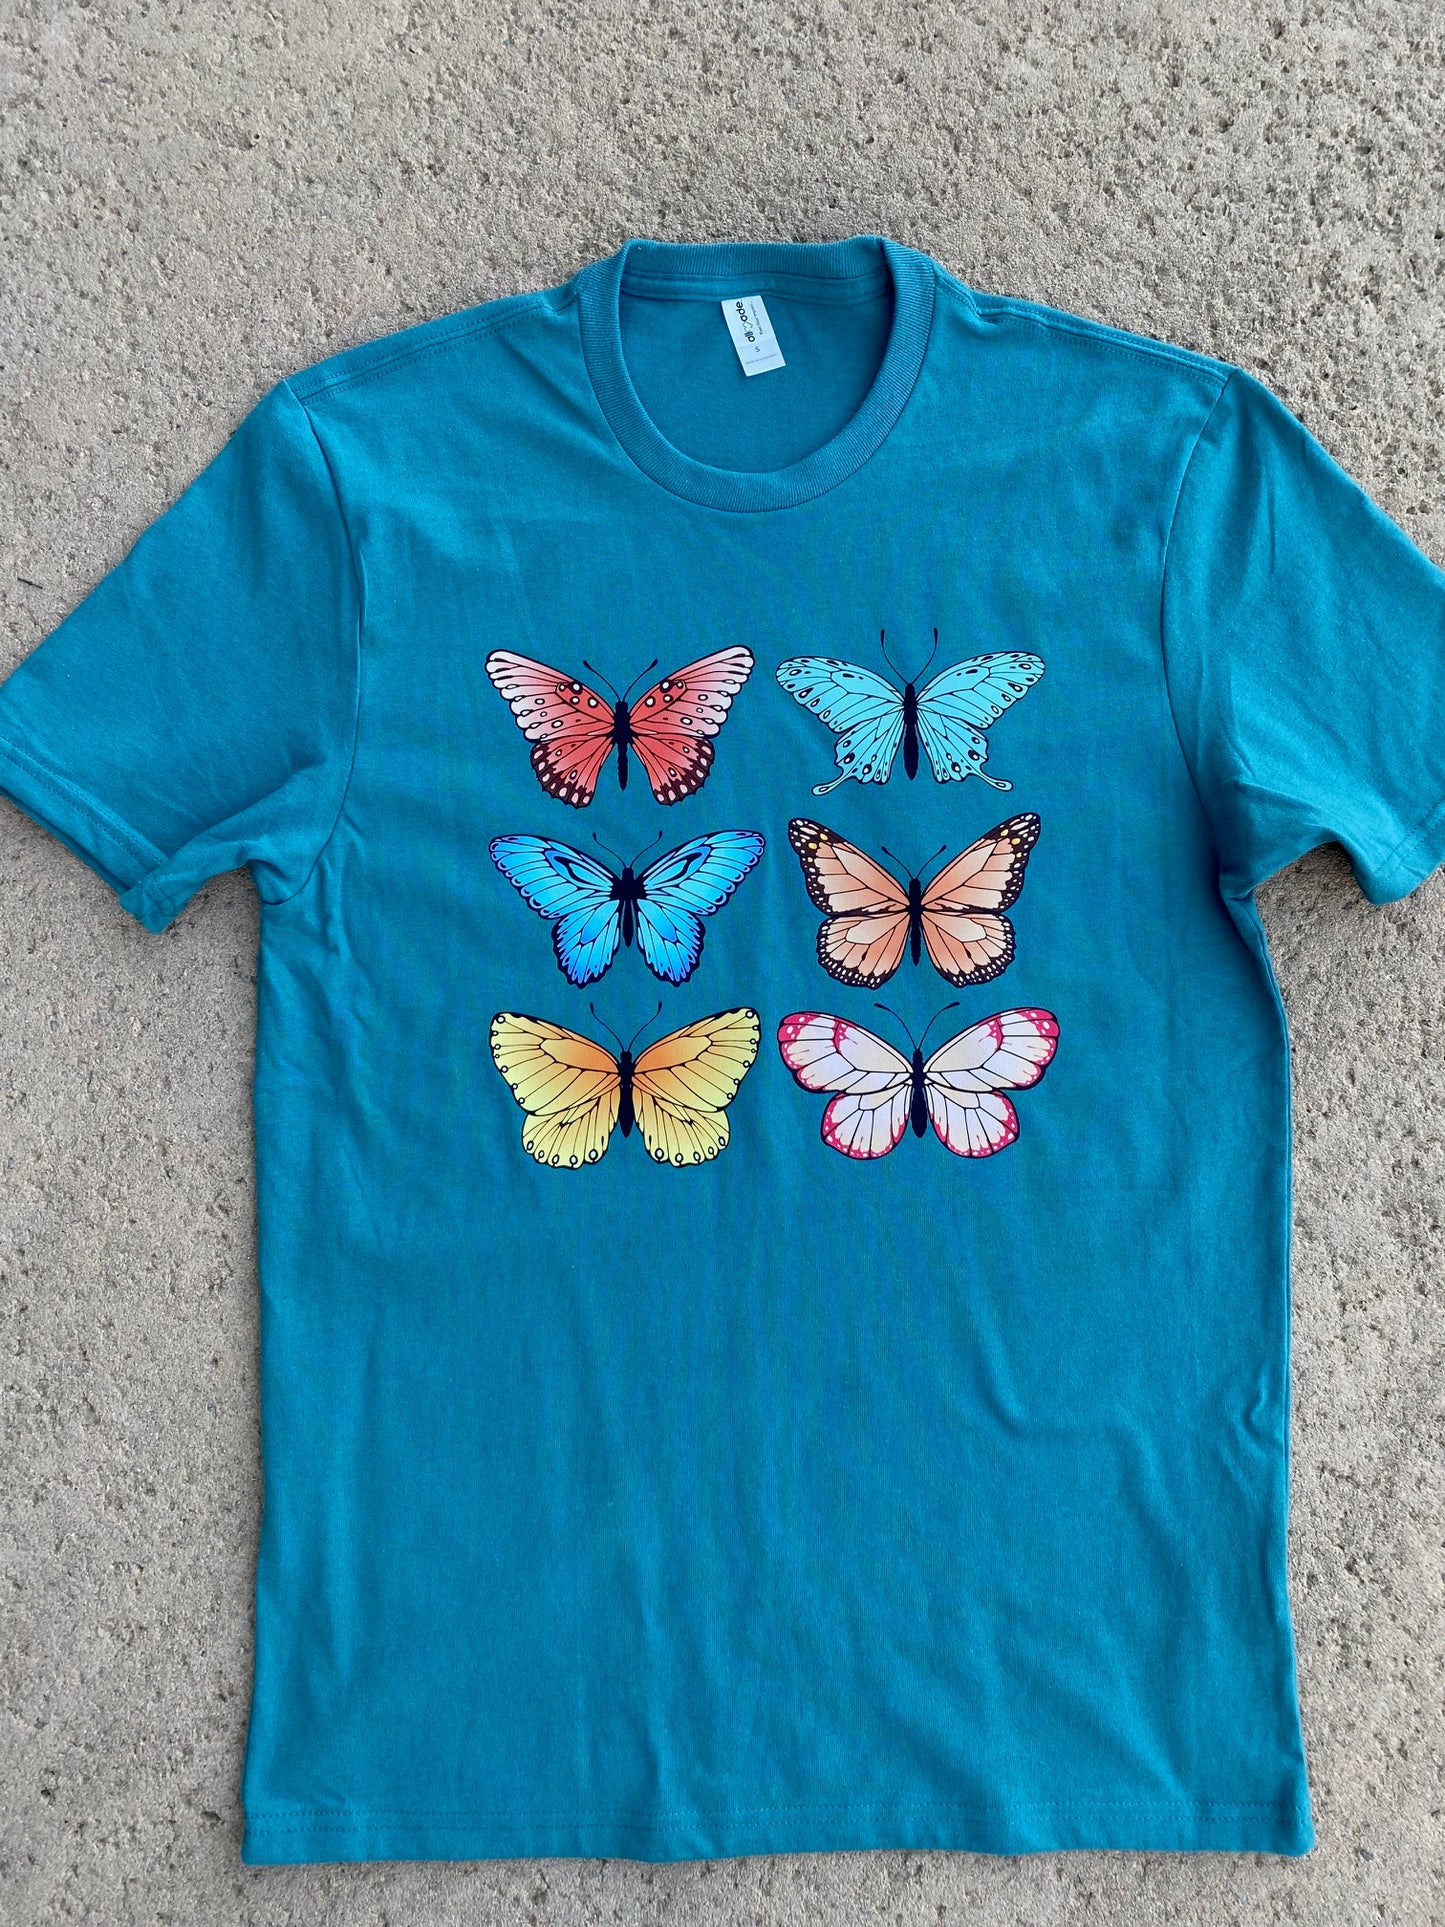 Butterflies on an Oceanic Teal Eco-Friendly T-Shirt